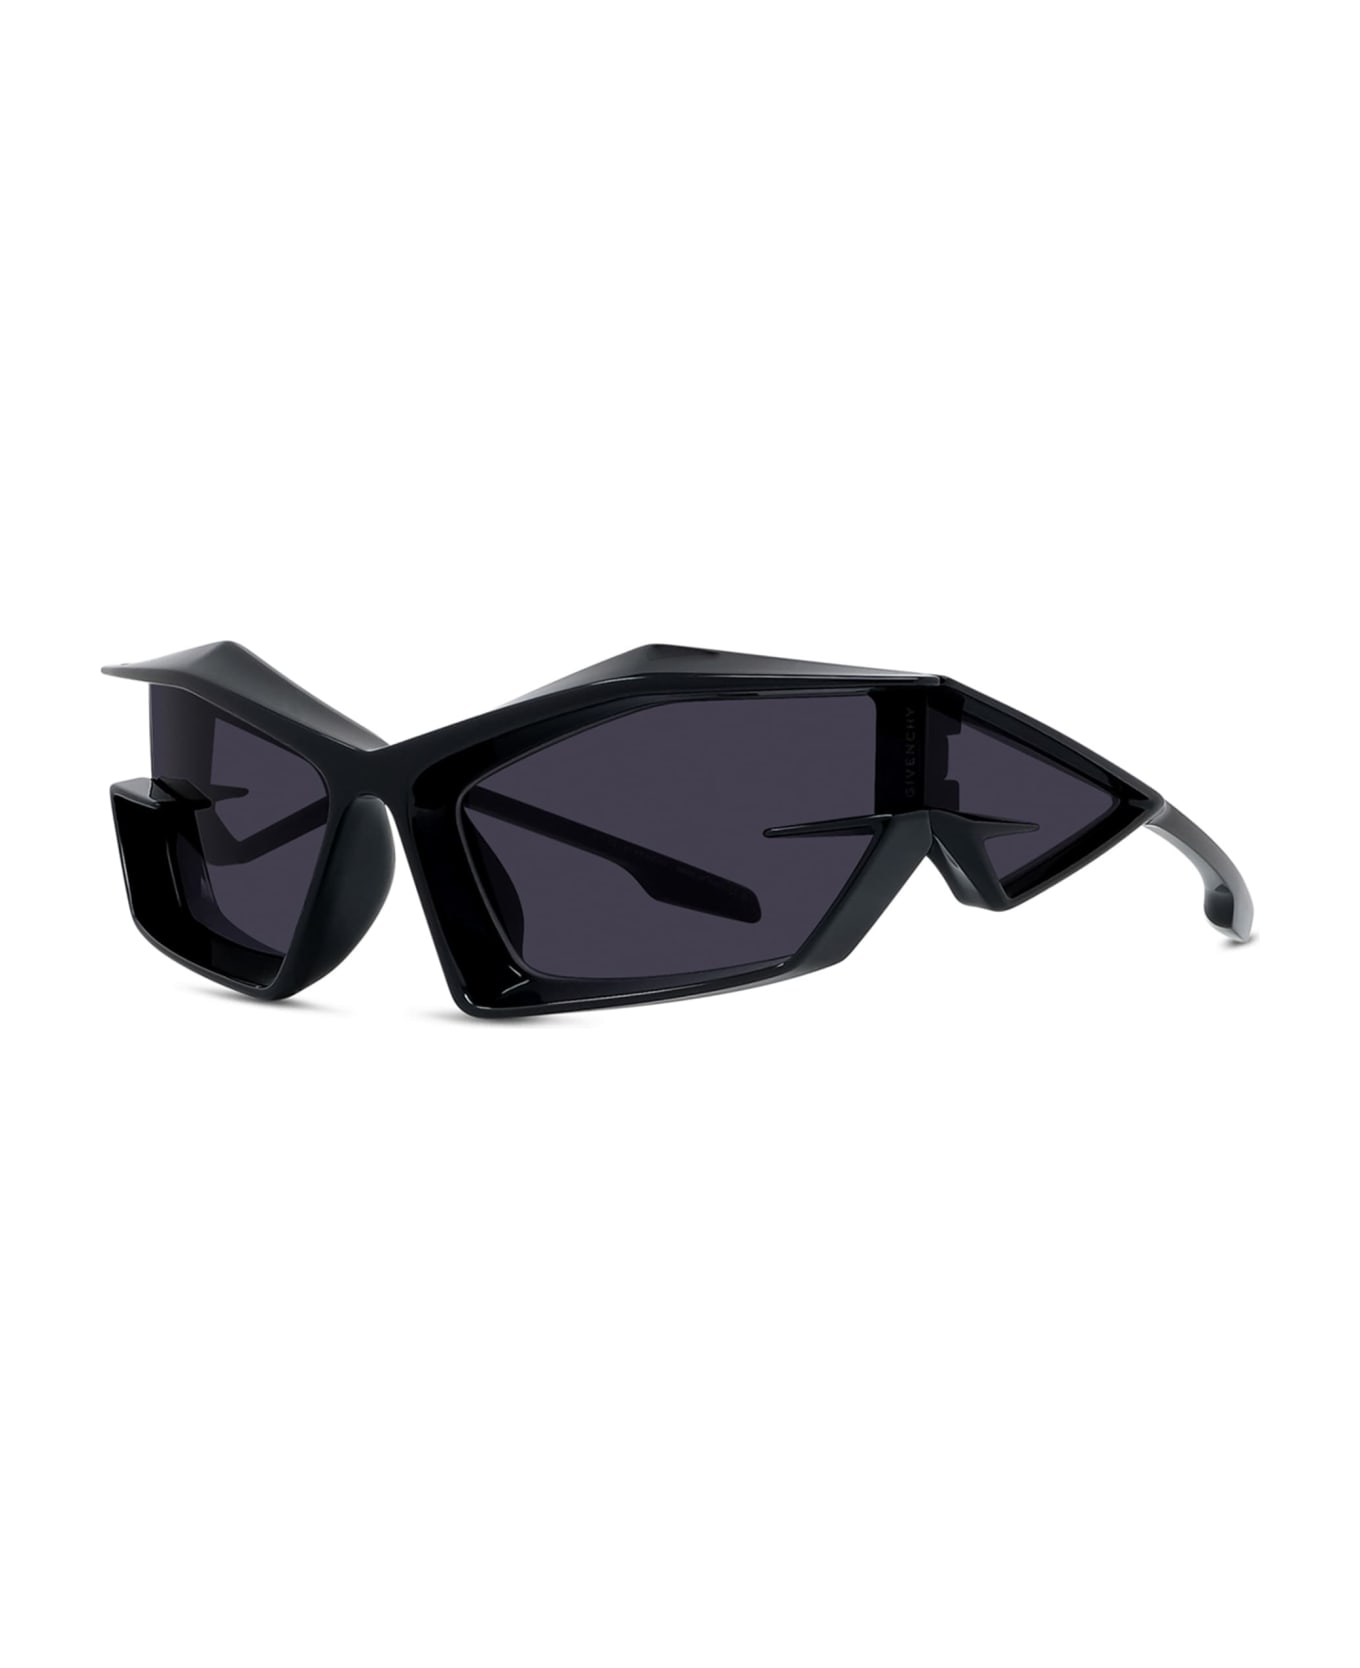 Givenchy Eyewear Giv Cut - Shiny Black Sunglasses - shiny black